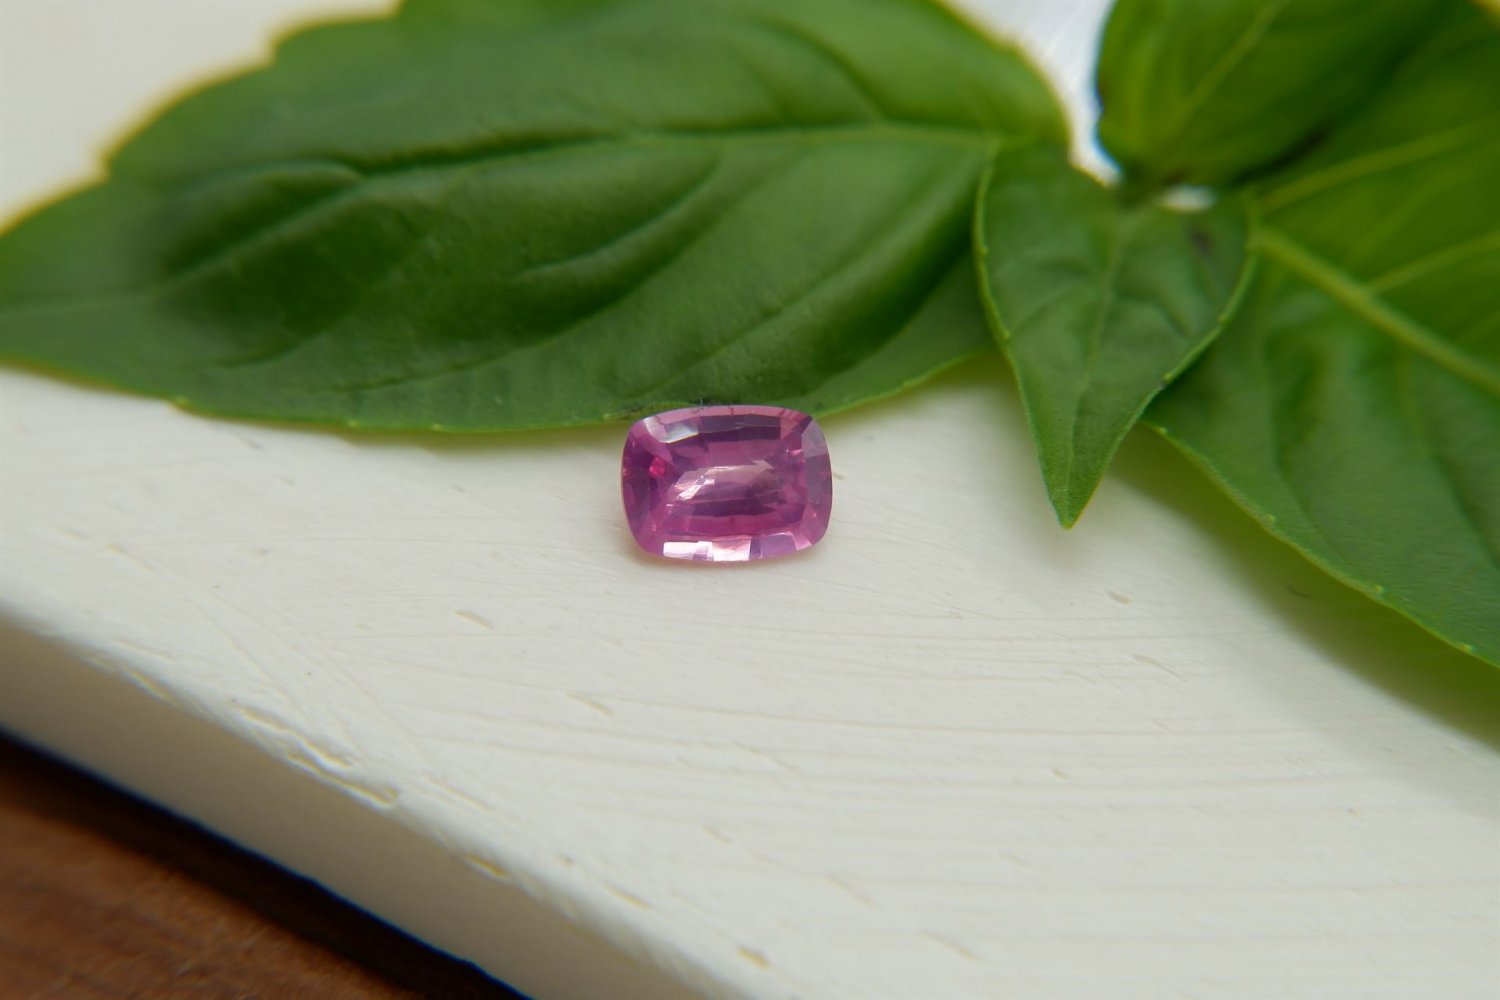 1 ct  purplish-Pink Sapphire, padparadscha-like premium handcrafted rectangular checkerboard Sri Lan